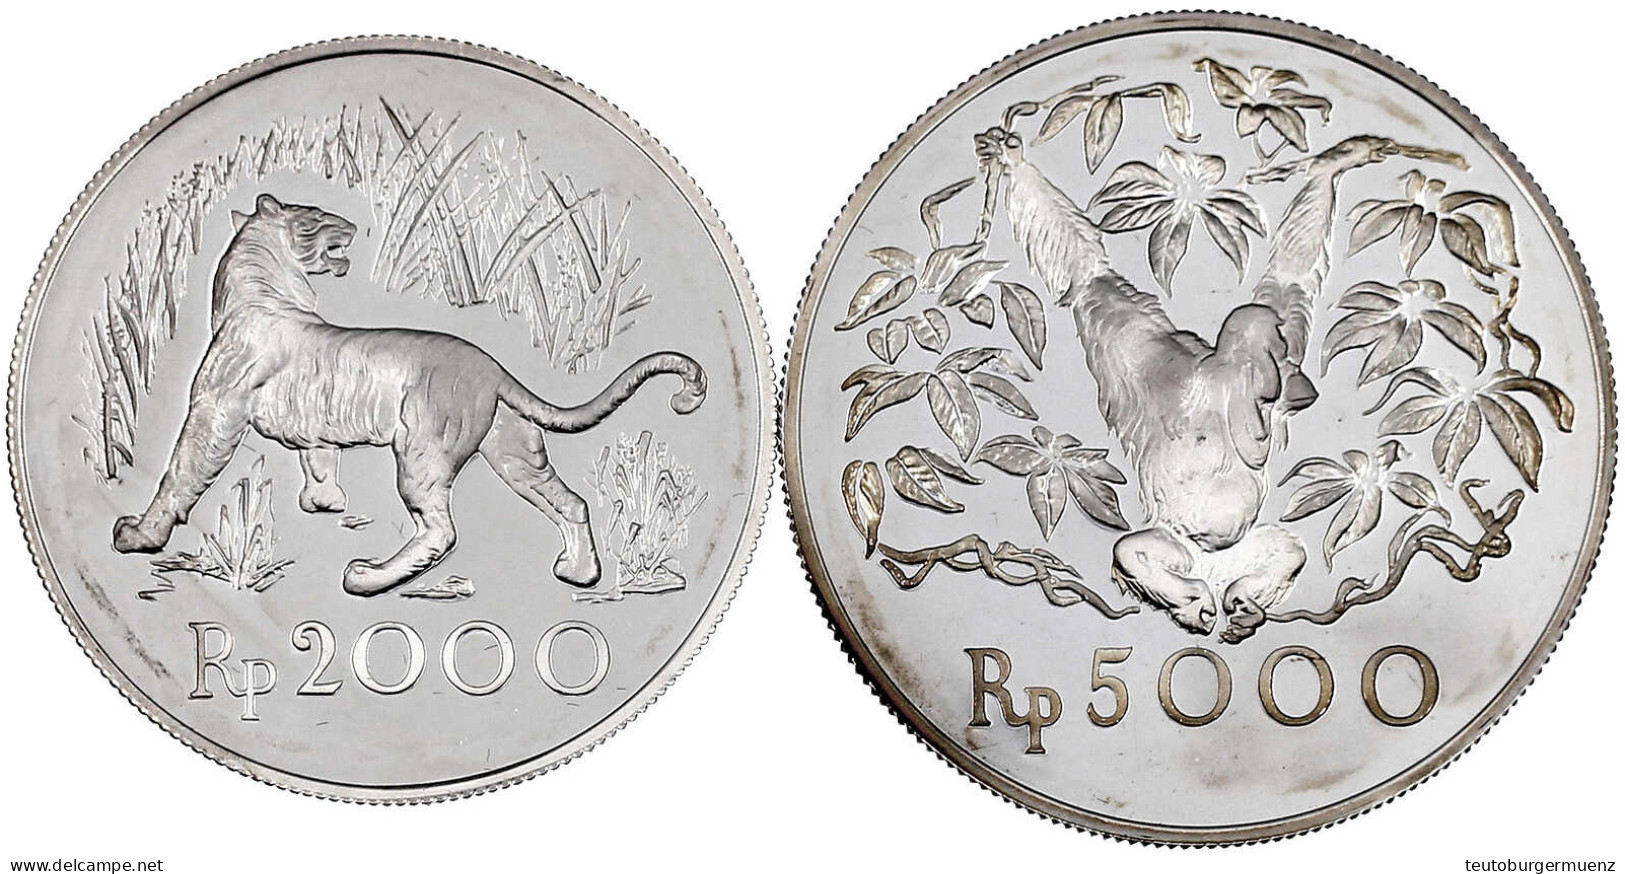 2 Silbermünzen: 2000 Und 5000 Rupien 1974. Java Tiger Und Orang-Utan. Polierte Platte. Krause/Mishler 39 Und 40a. - Indonesië